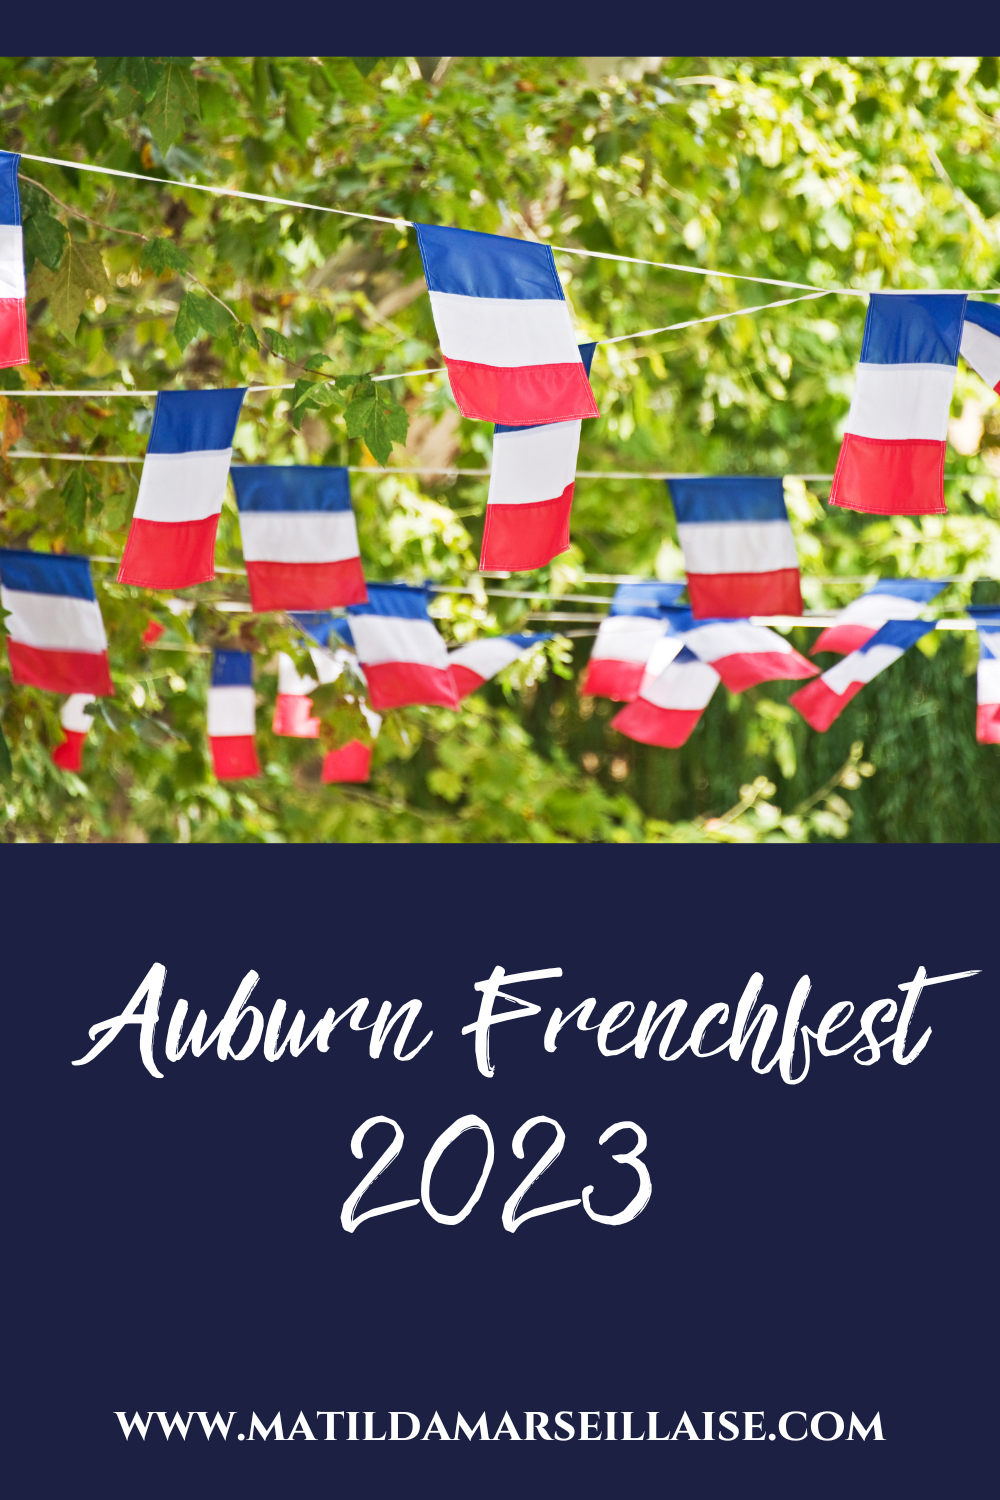 Auburn Frenchfest 2023 propose un week-end impressionnant d’événements pour tous les francophiles